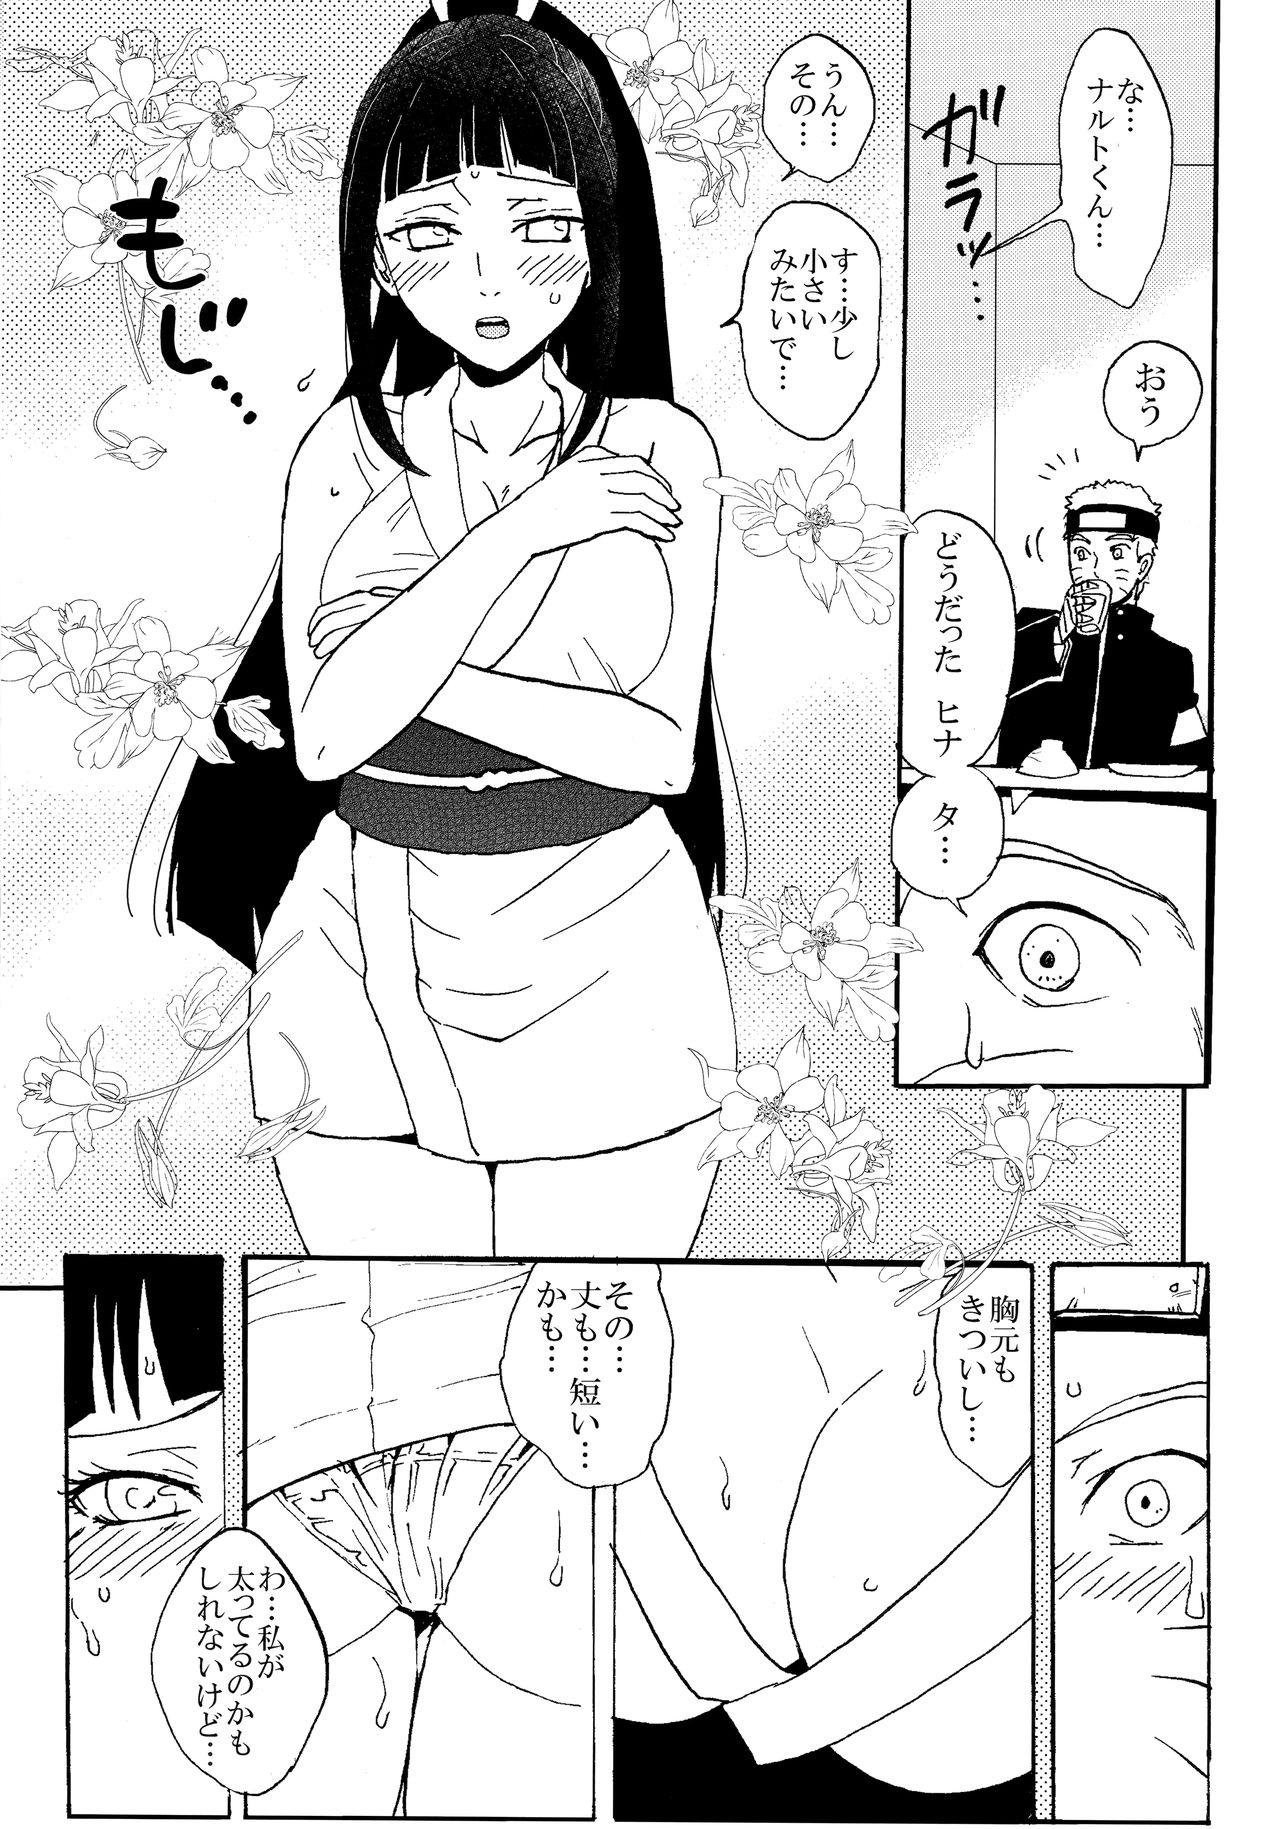 Dominatrix Shinkon Hinata no Kunoichi Cosplay datteba yo! - Naruto Harcore - Page 4